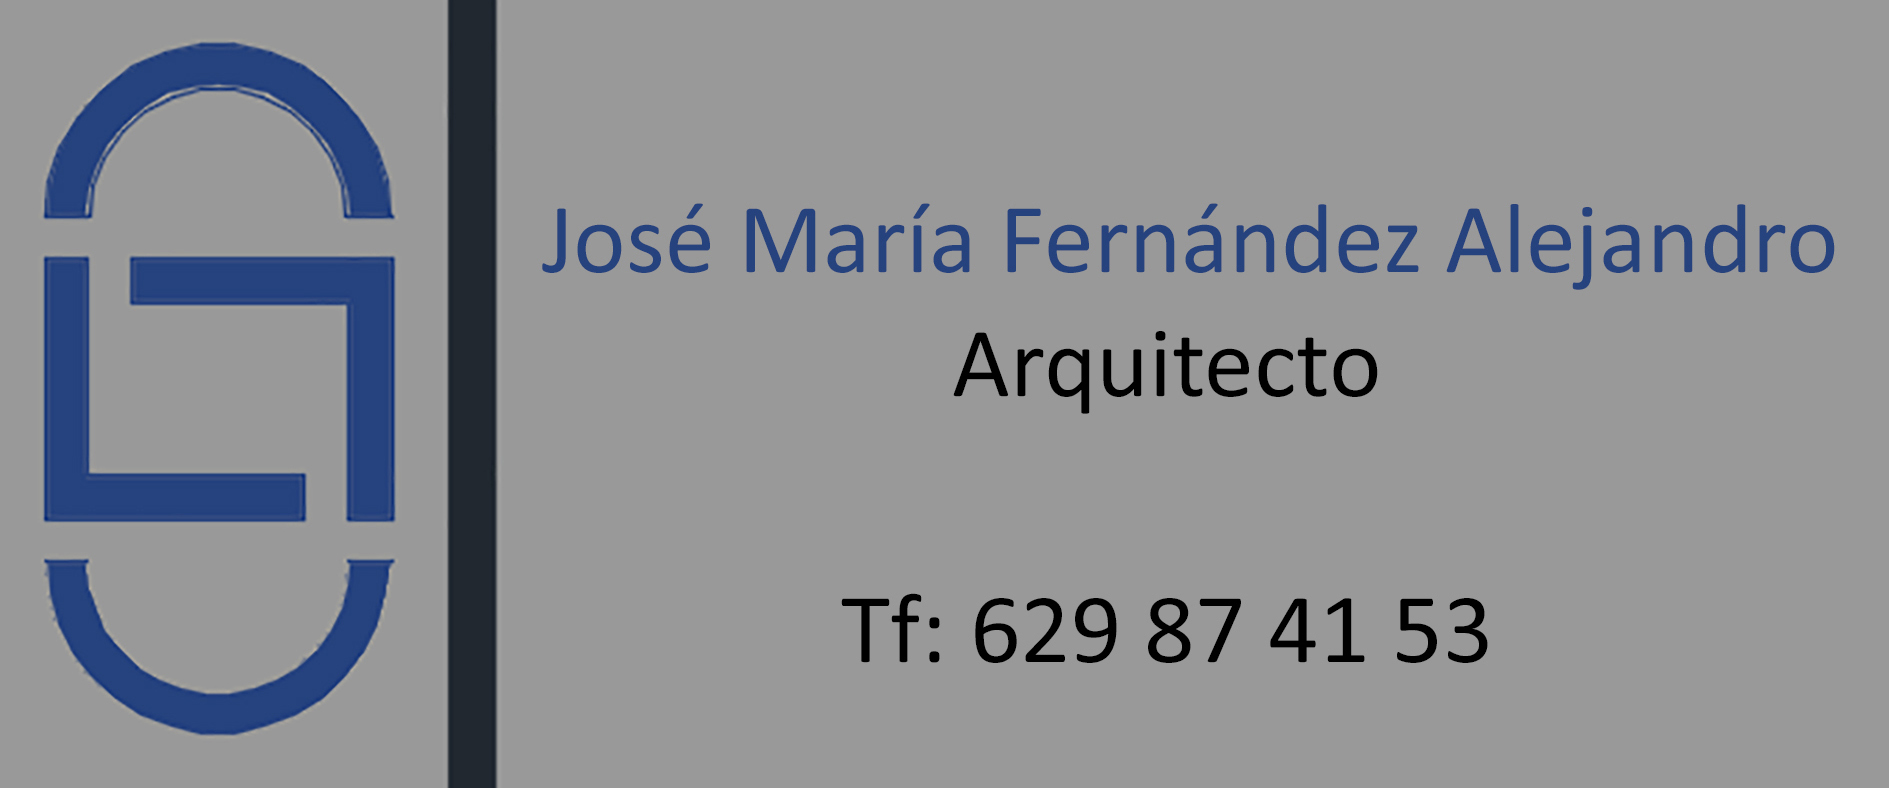 José María Fernández Alejandro - Arquitecto